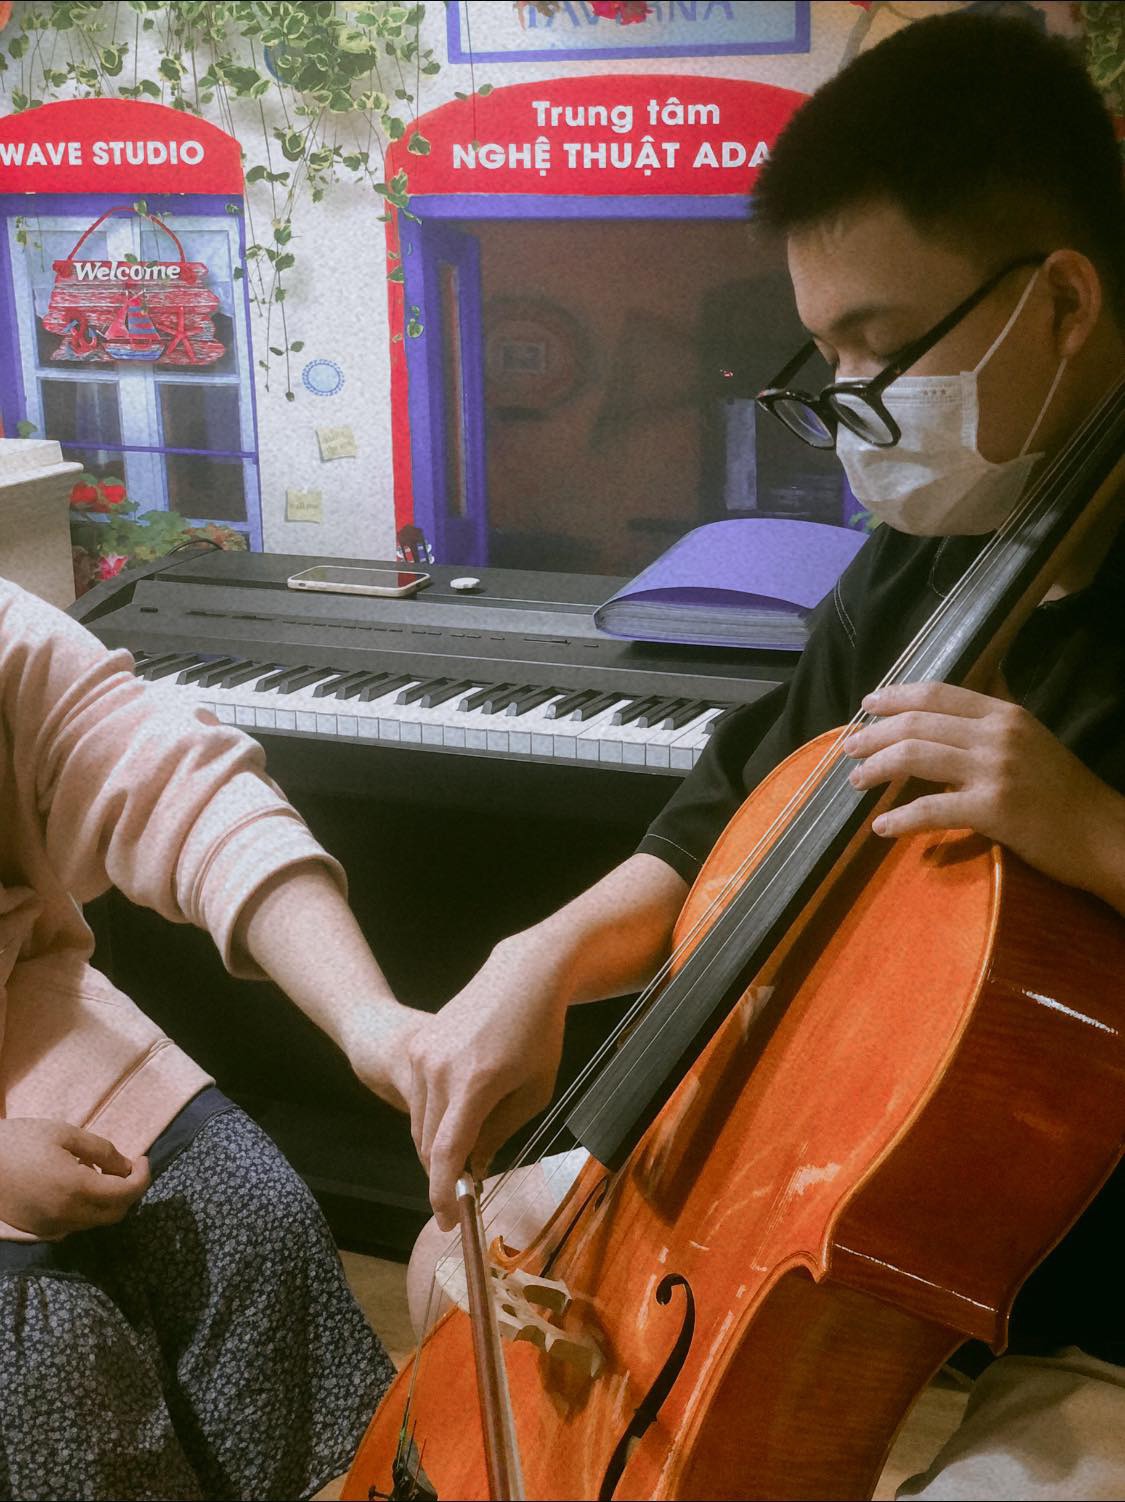 Cello -Sự kiên trì và nhẫn nại,sự khéo léo,giảm căng thẳng và mệt mỏi